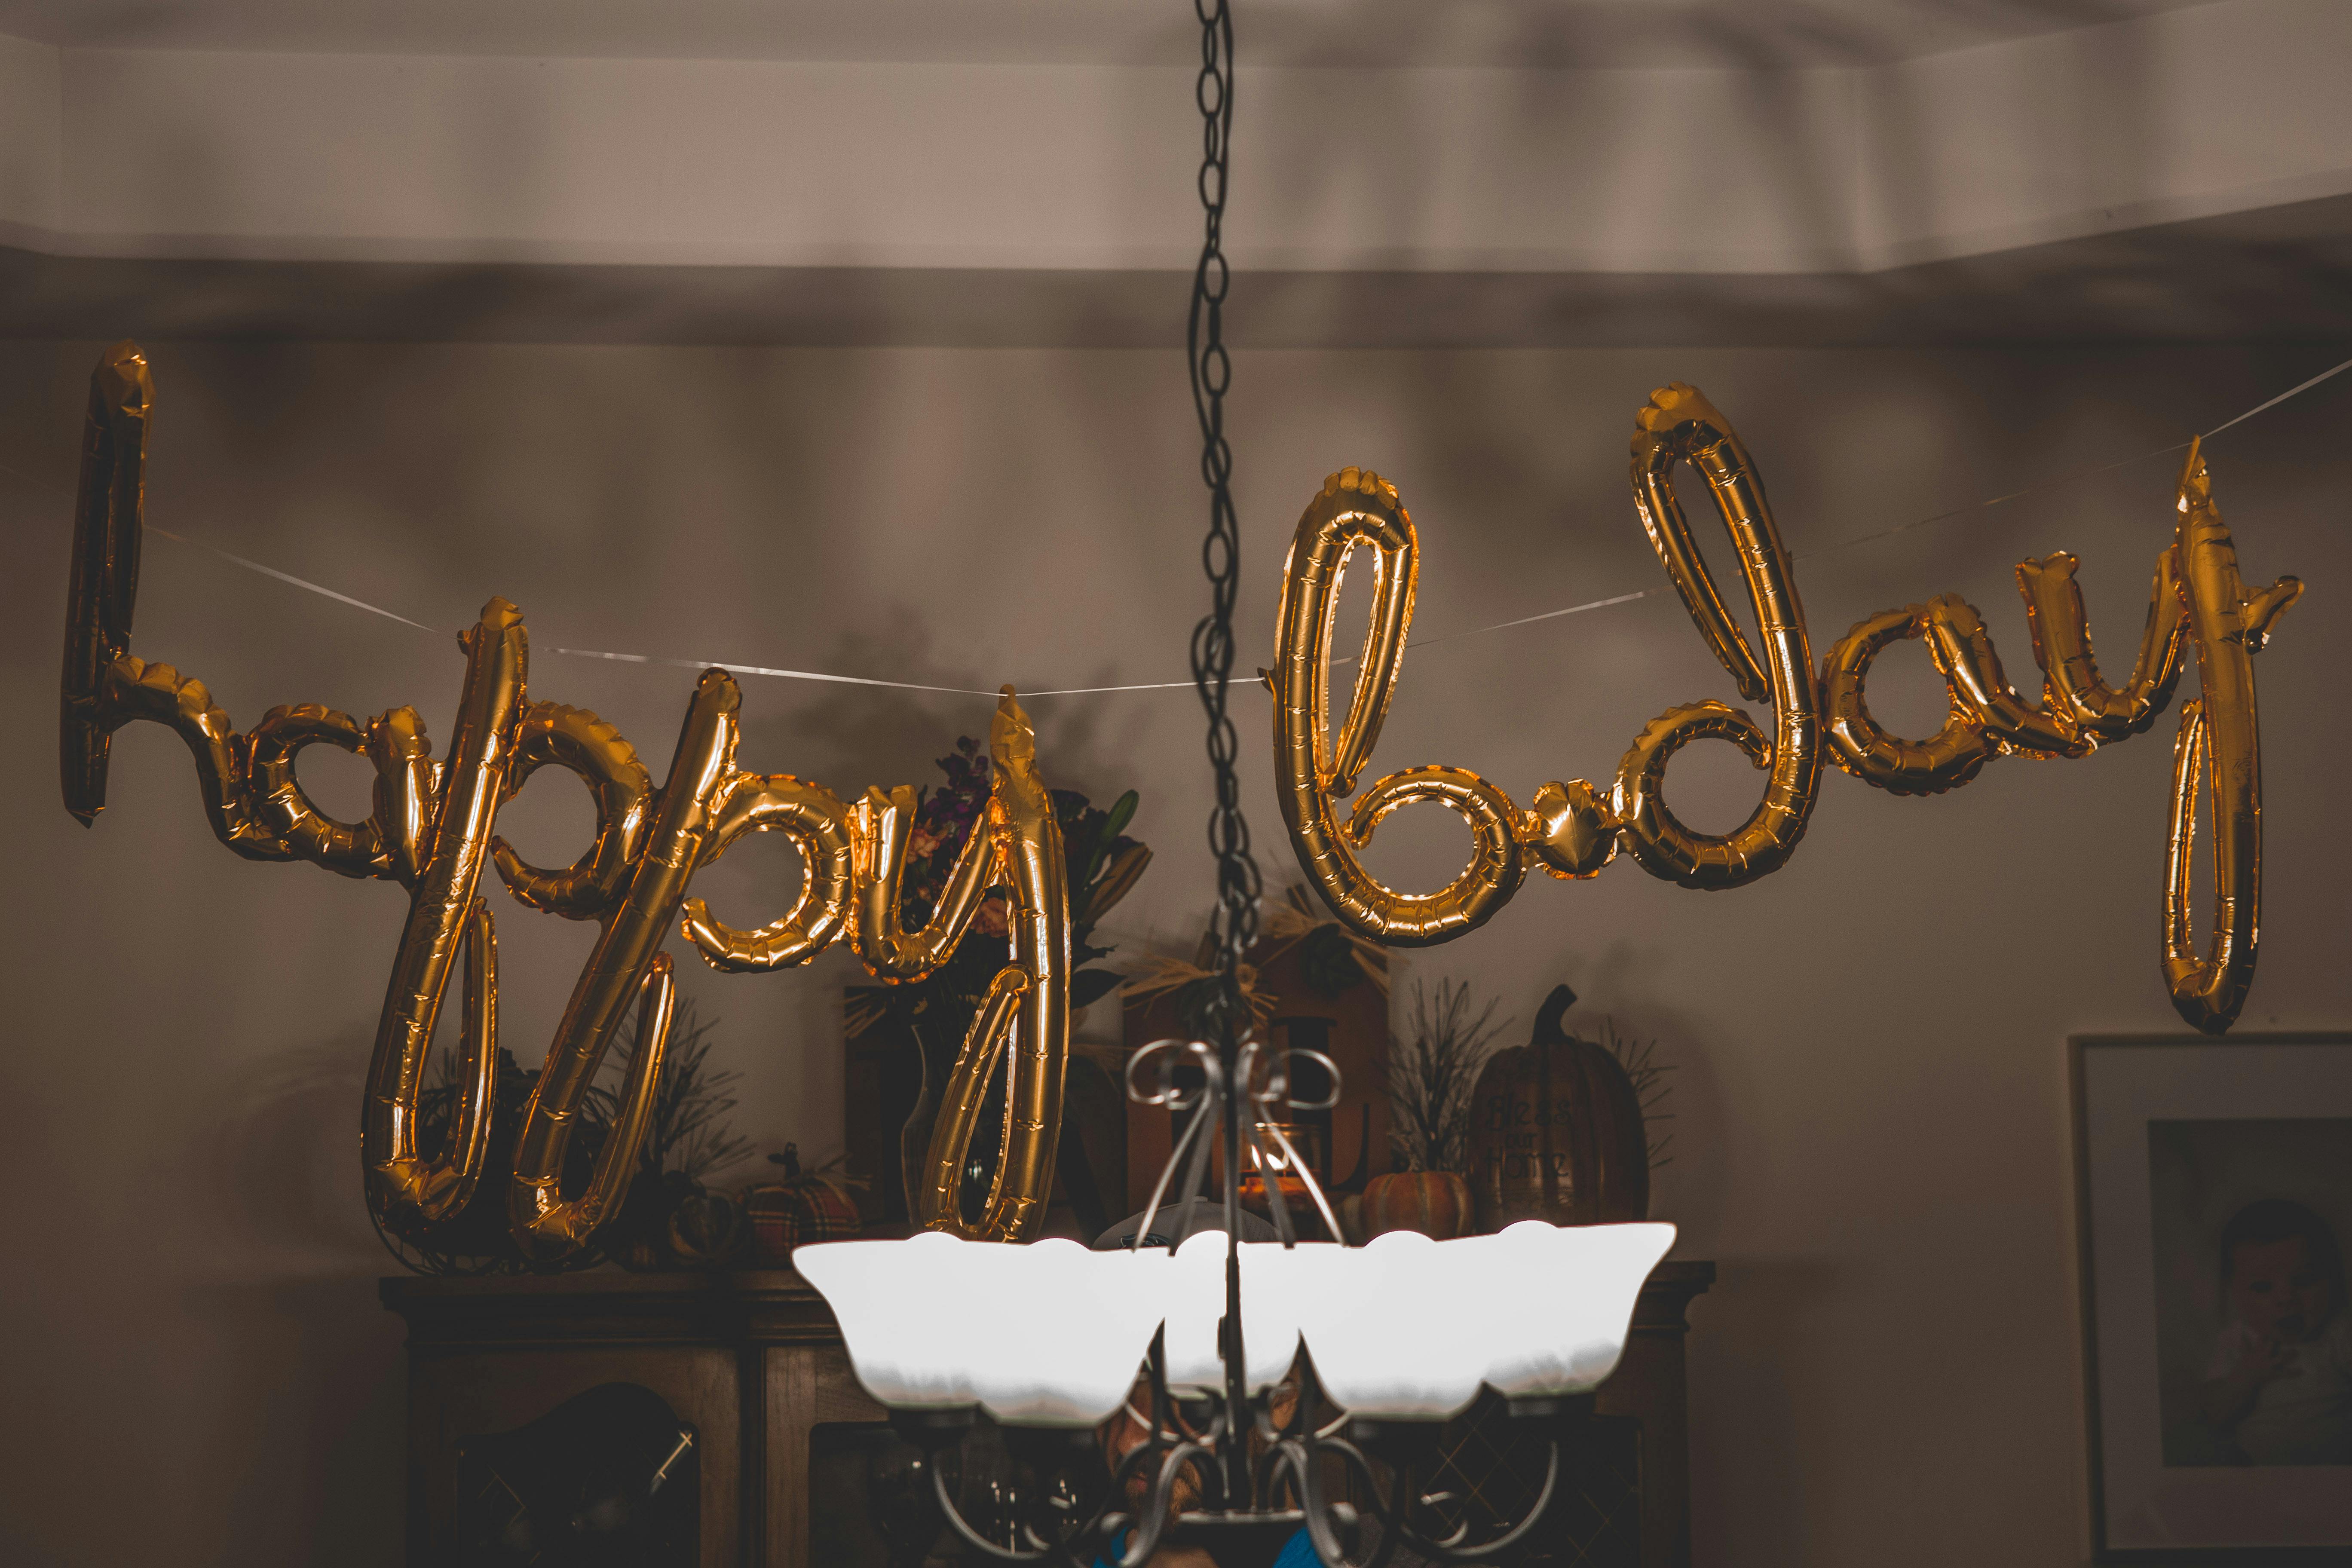 "Happy Birthday" balloons | Source: Pexels